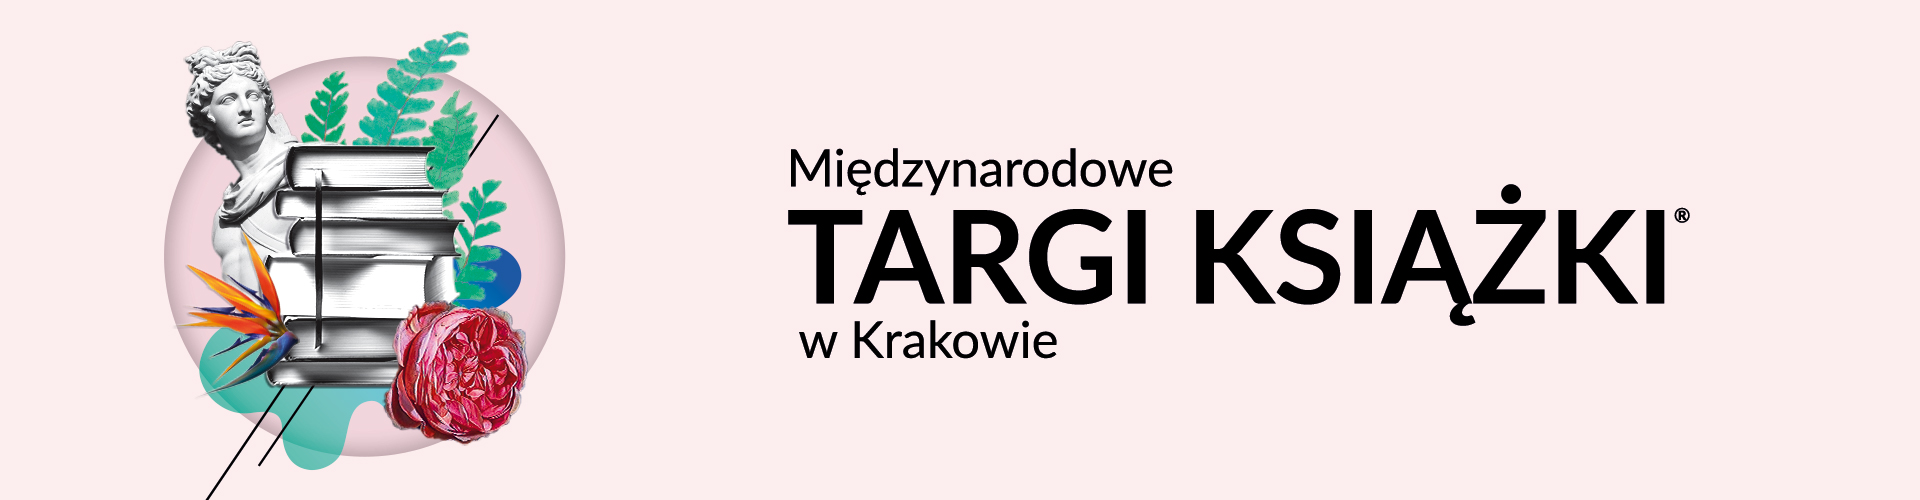 Międzynarodowe Targi Książki w Krakowie